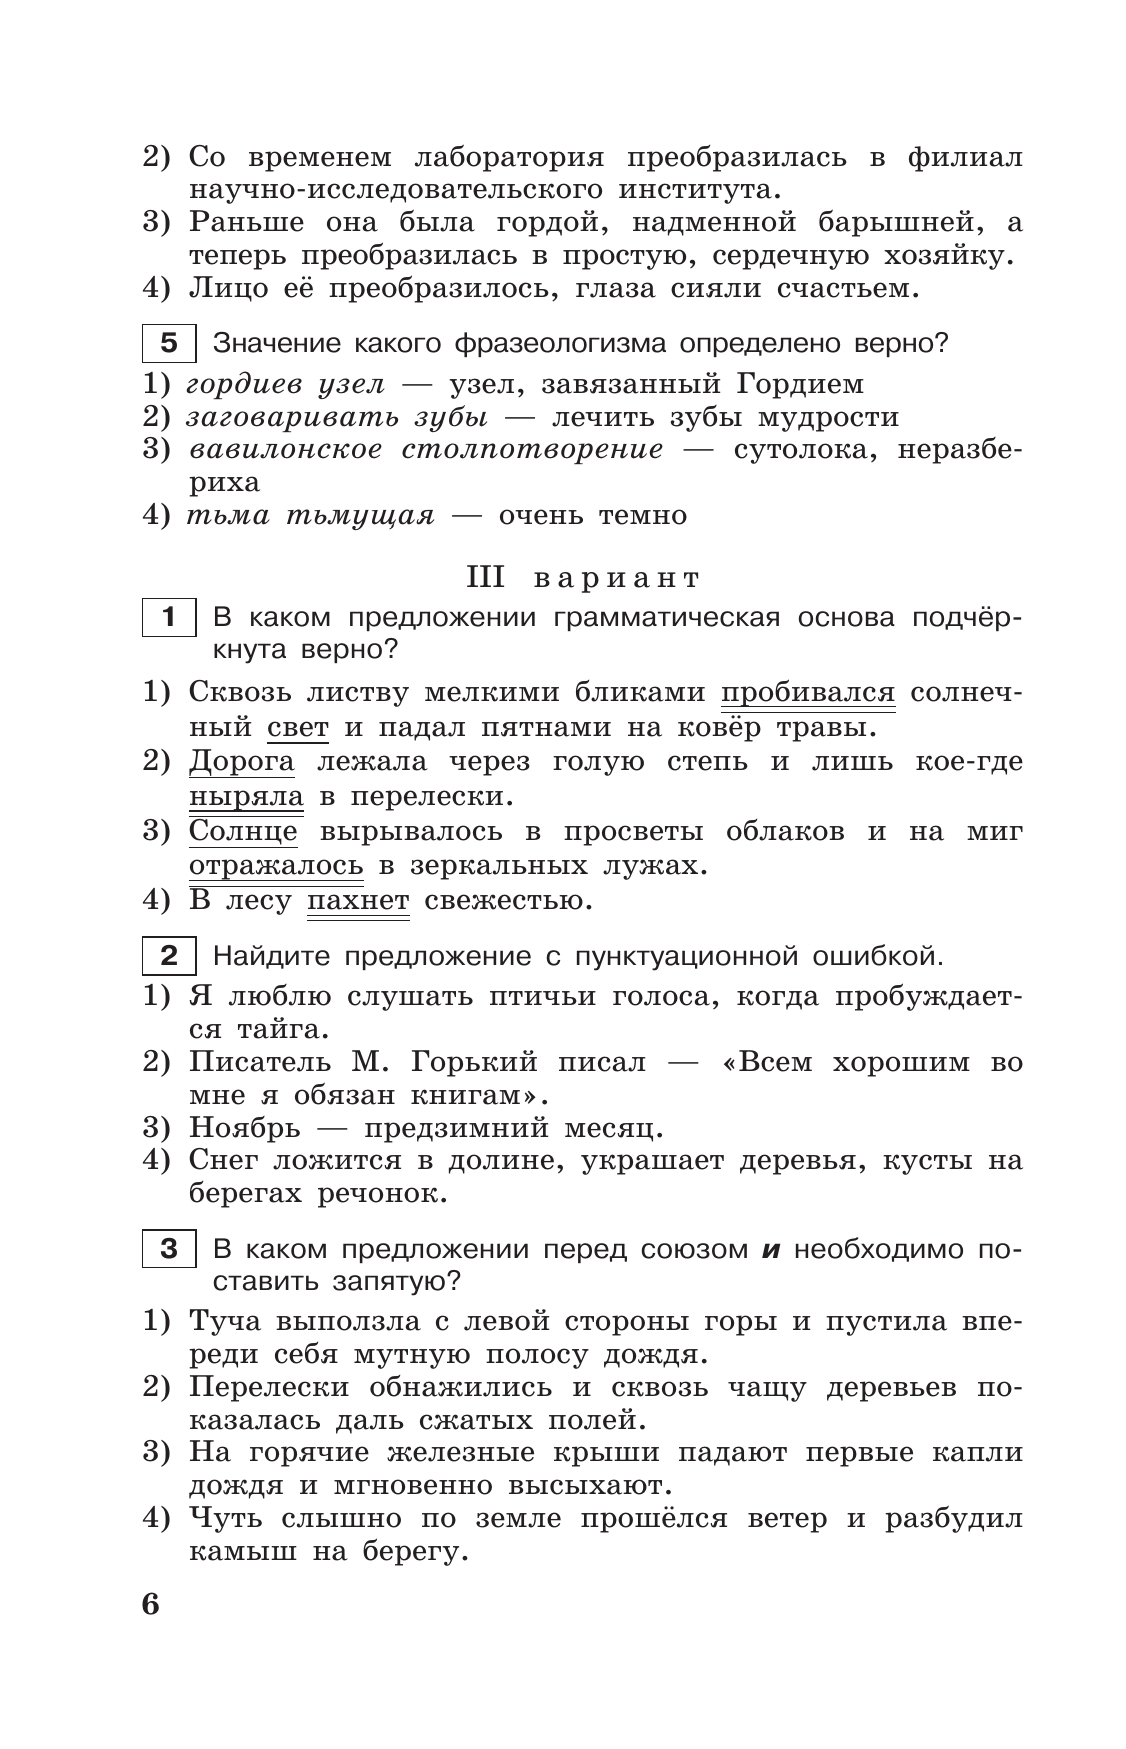 Тестовые задания по русскому языку. 7 класс. 10